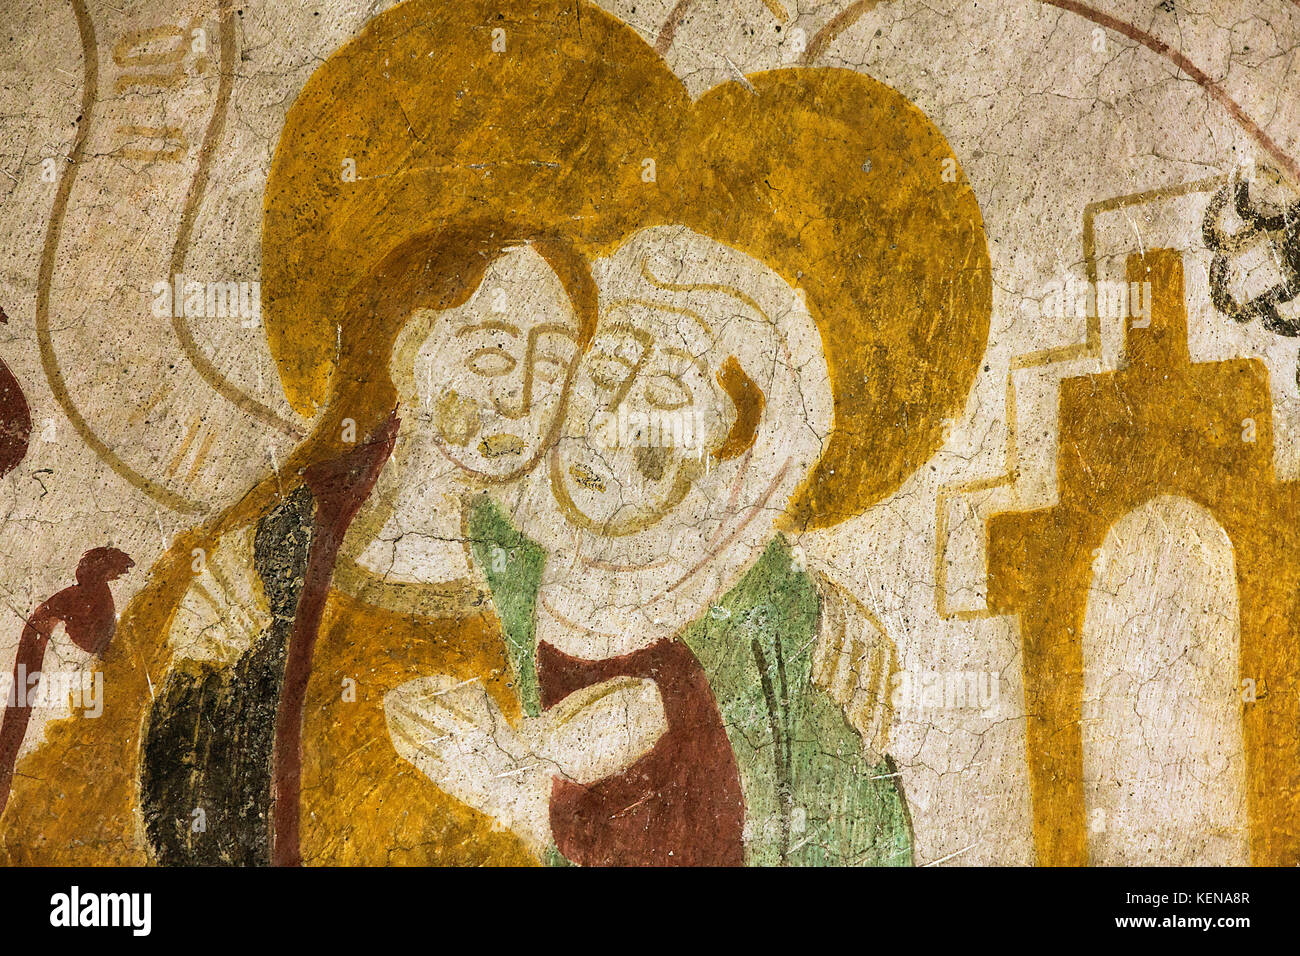 Dänische spät mittelalterlichen religiösen Fresken, die Jungfrau Maria (links) mit ihrem Haar, besucht ihre Cousine Elisabeth. Dieses Gemälde ist von Aro Stockfoto